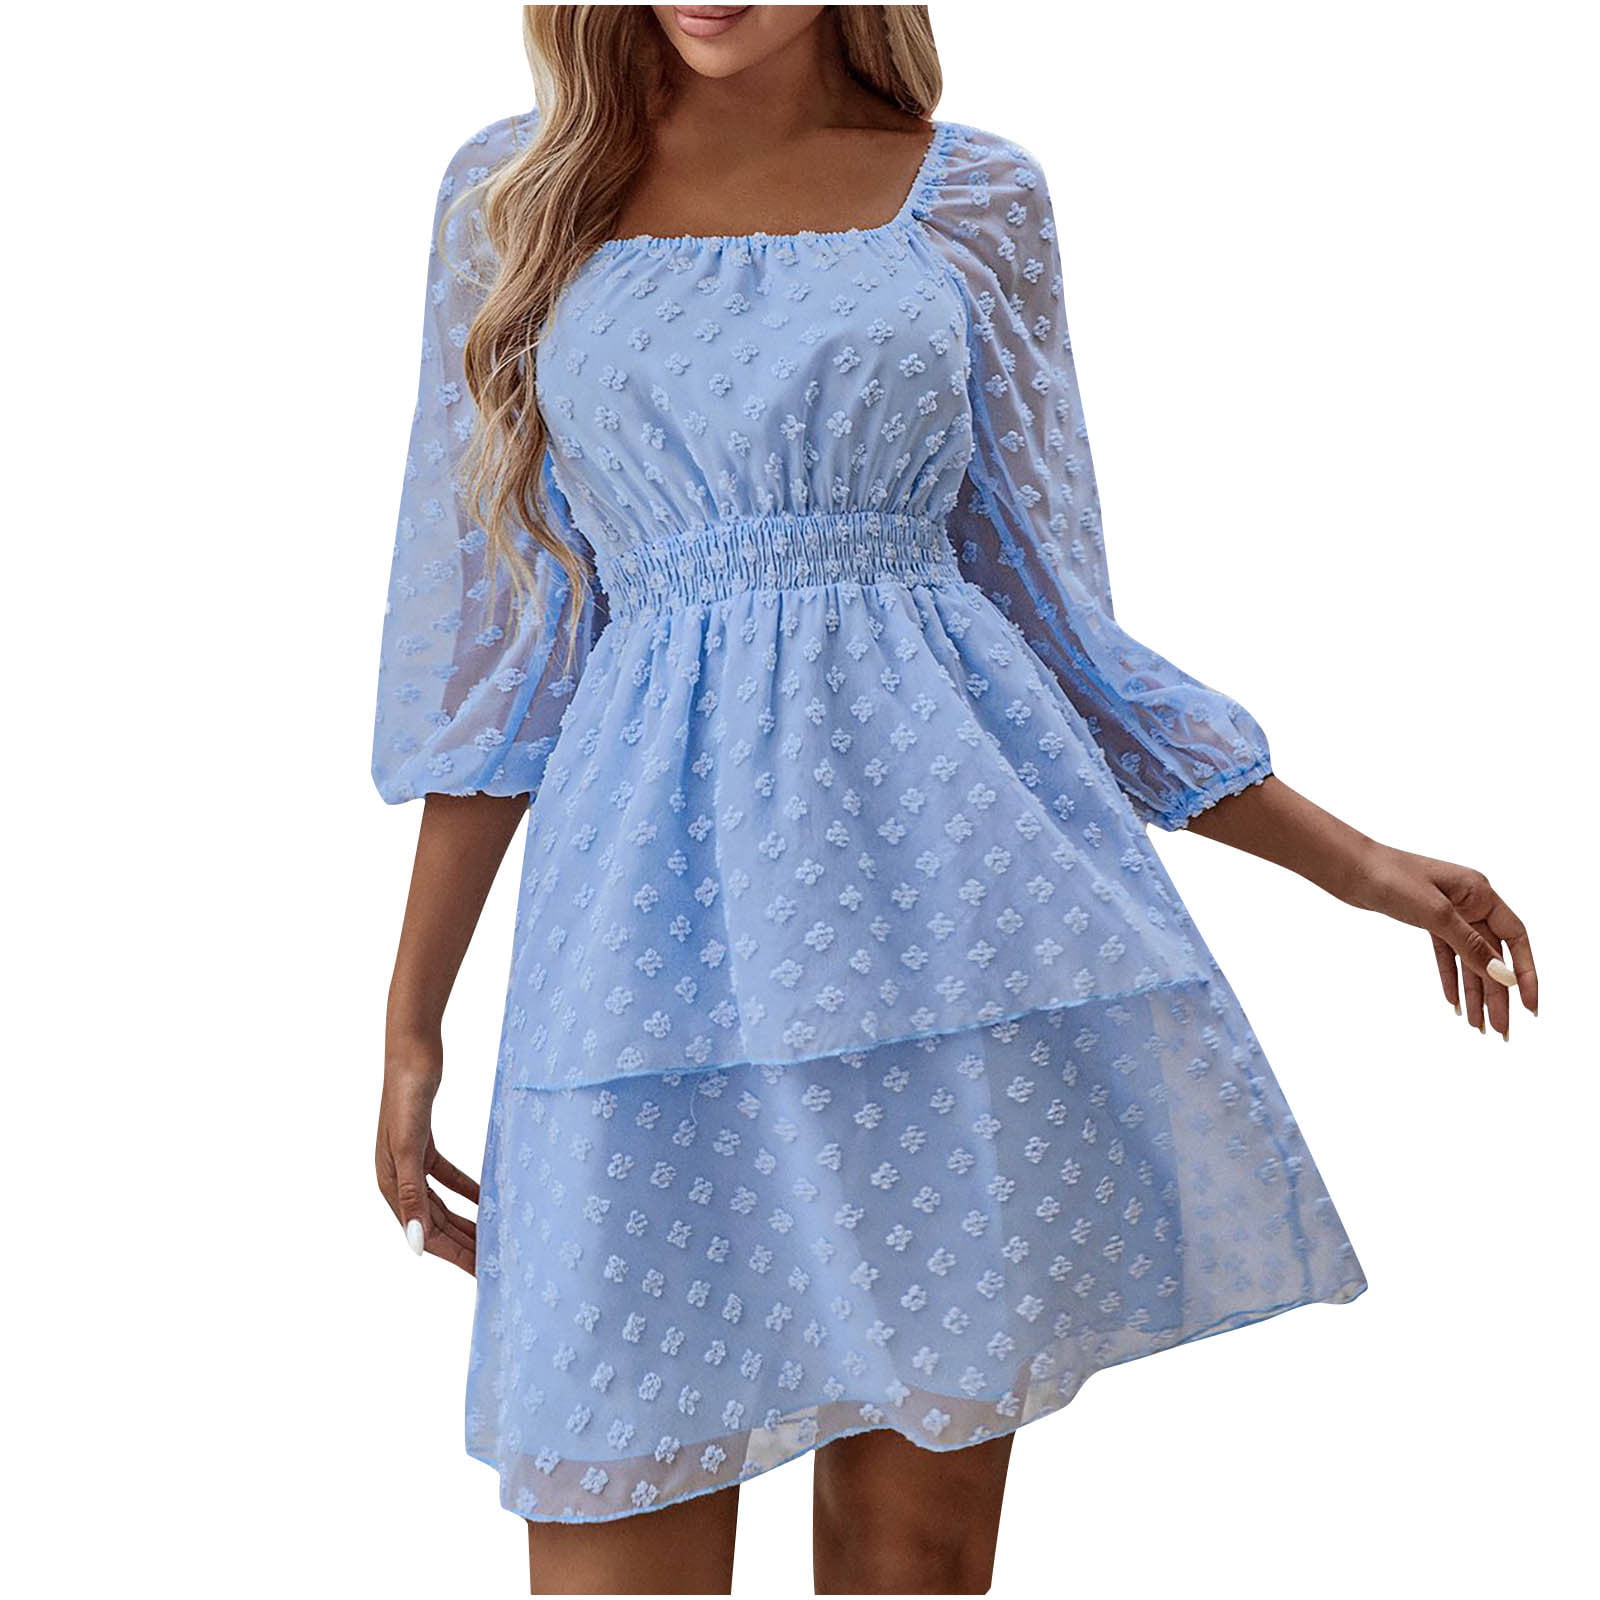 skpabo Womens Smocked Short Sleeve V Neck Mini Dress Summer Swiss Dot Flowy  Short Dress 